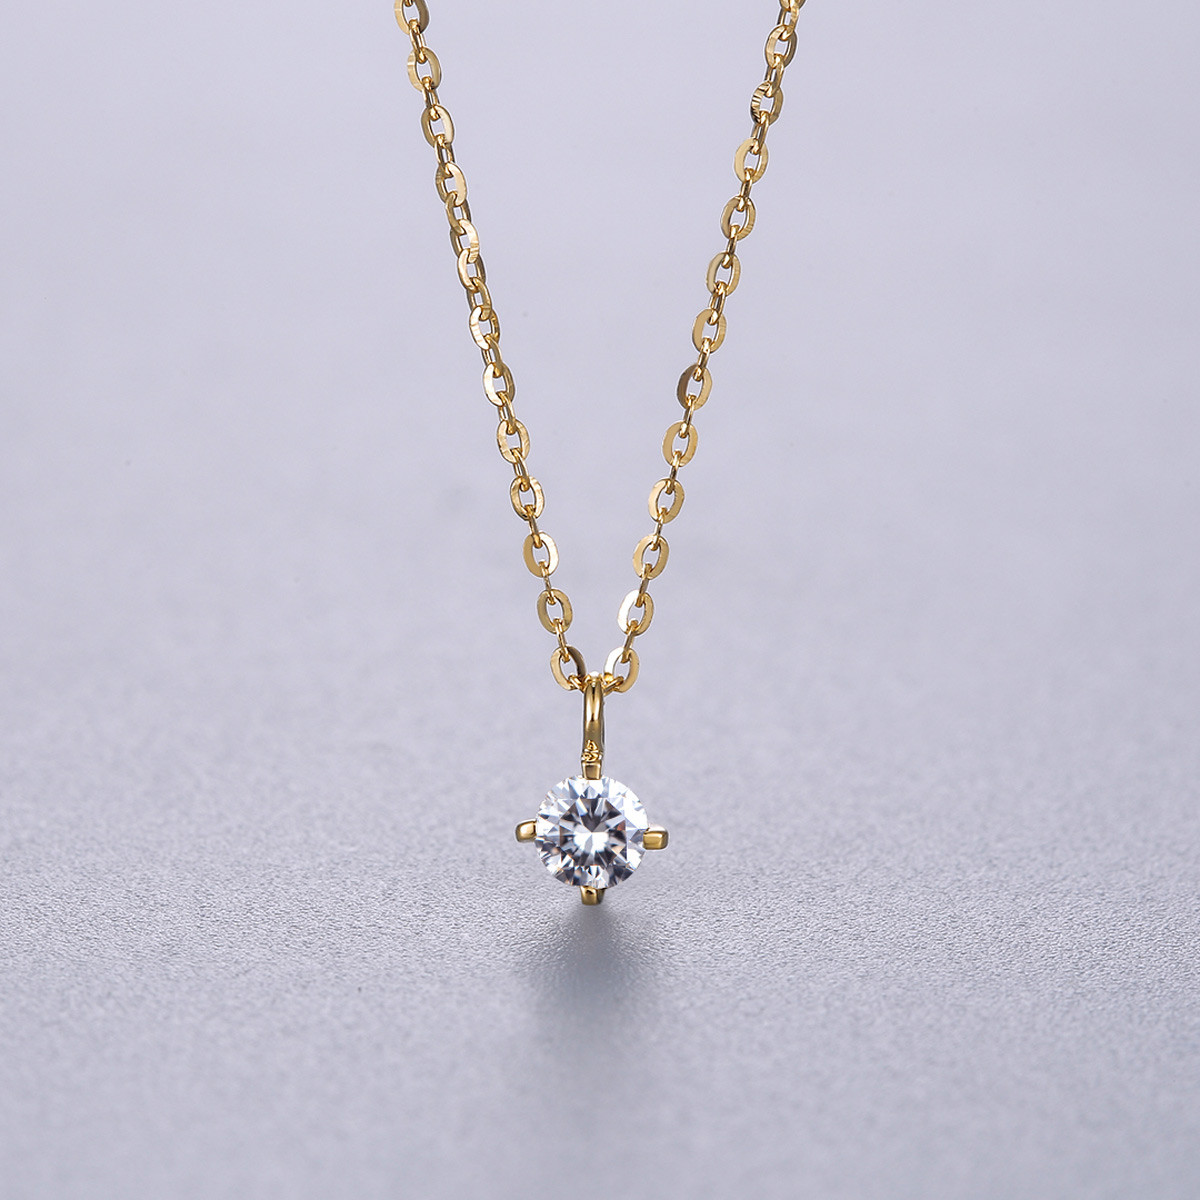 魅力时尚优雅百搭气质范 缘点 经典简单款18k金钻石吊坠/钻石项链